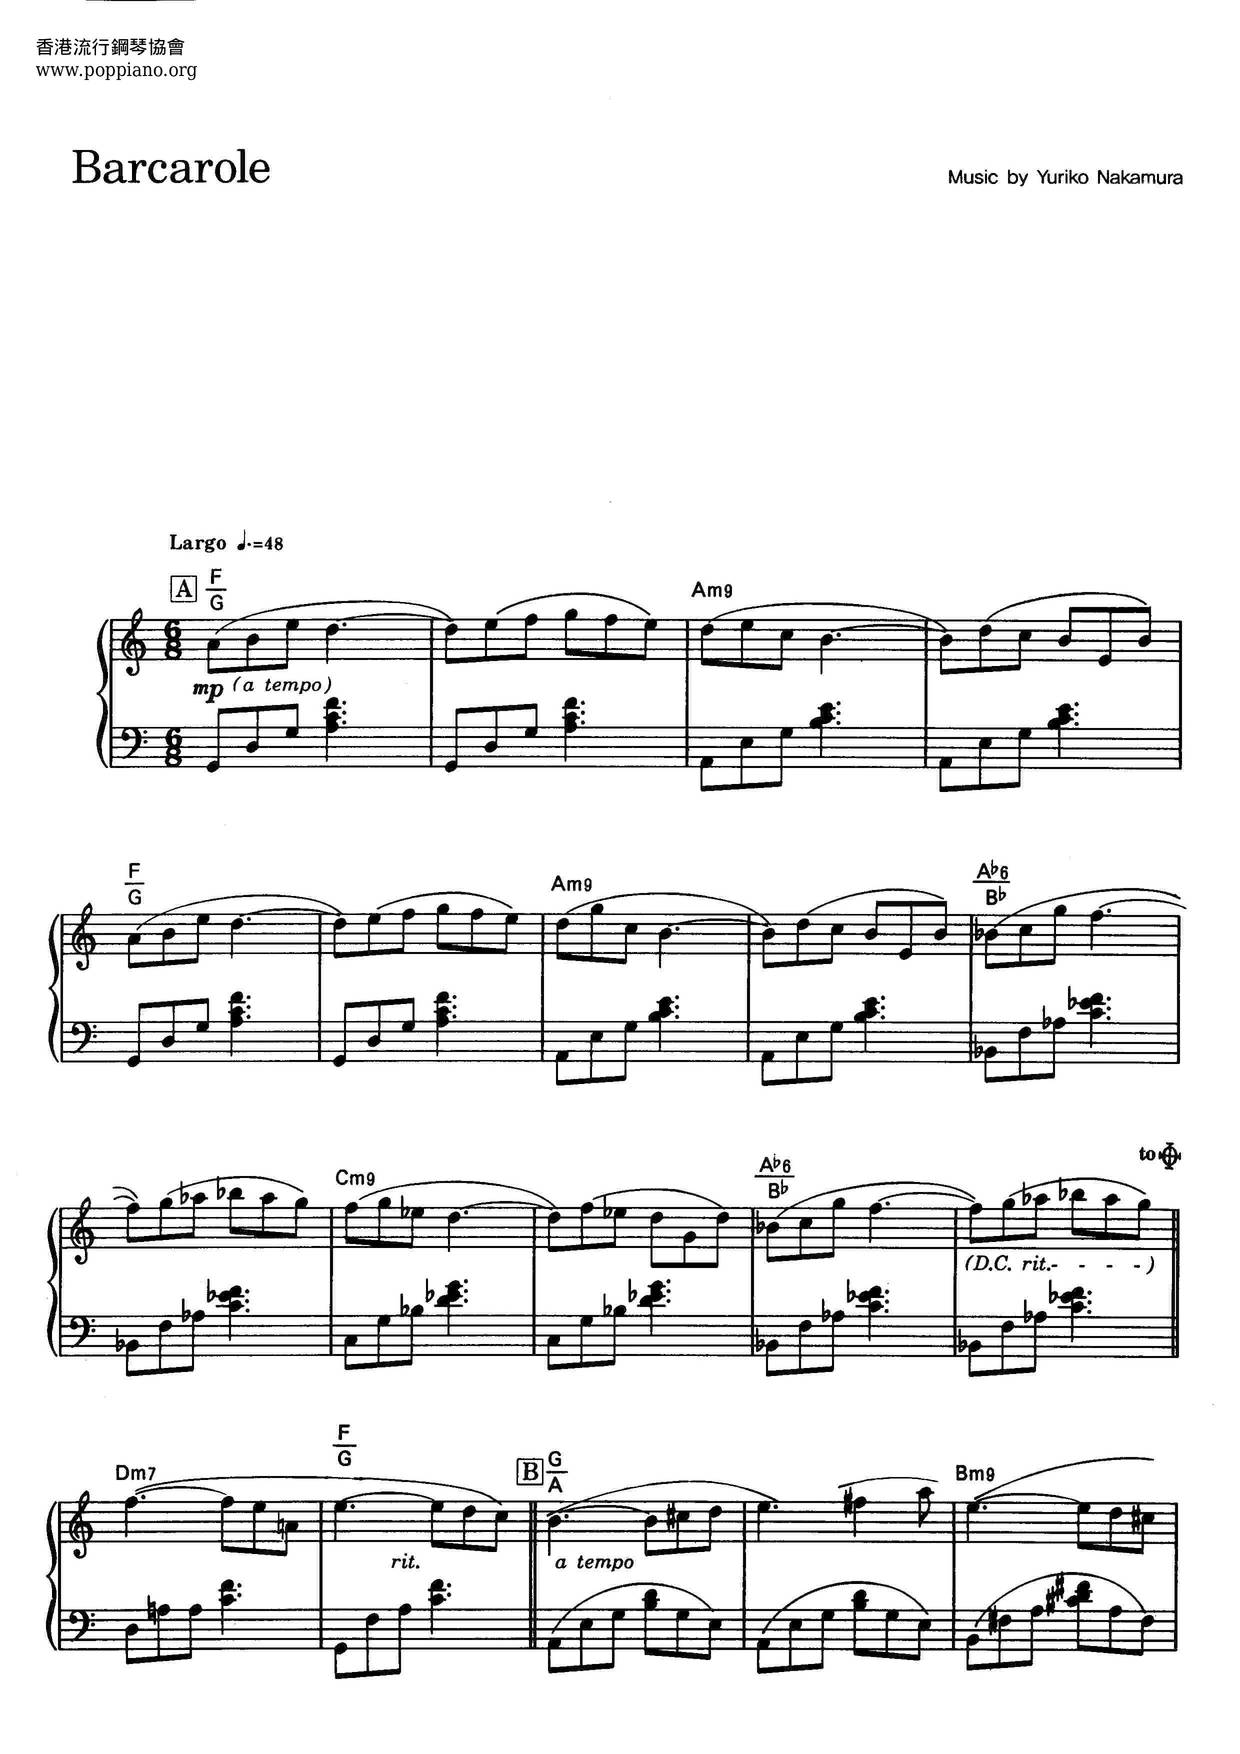 Barcaroleピアノ譜